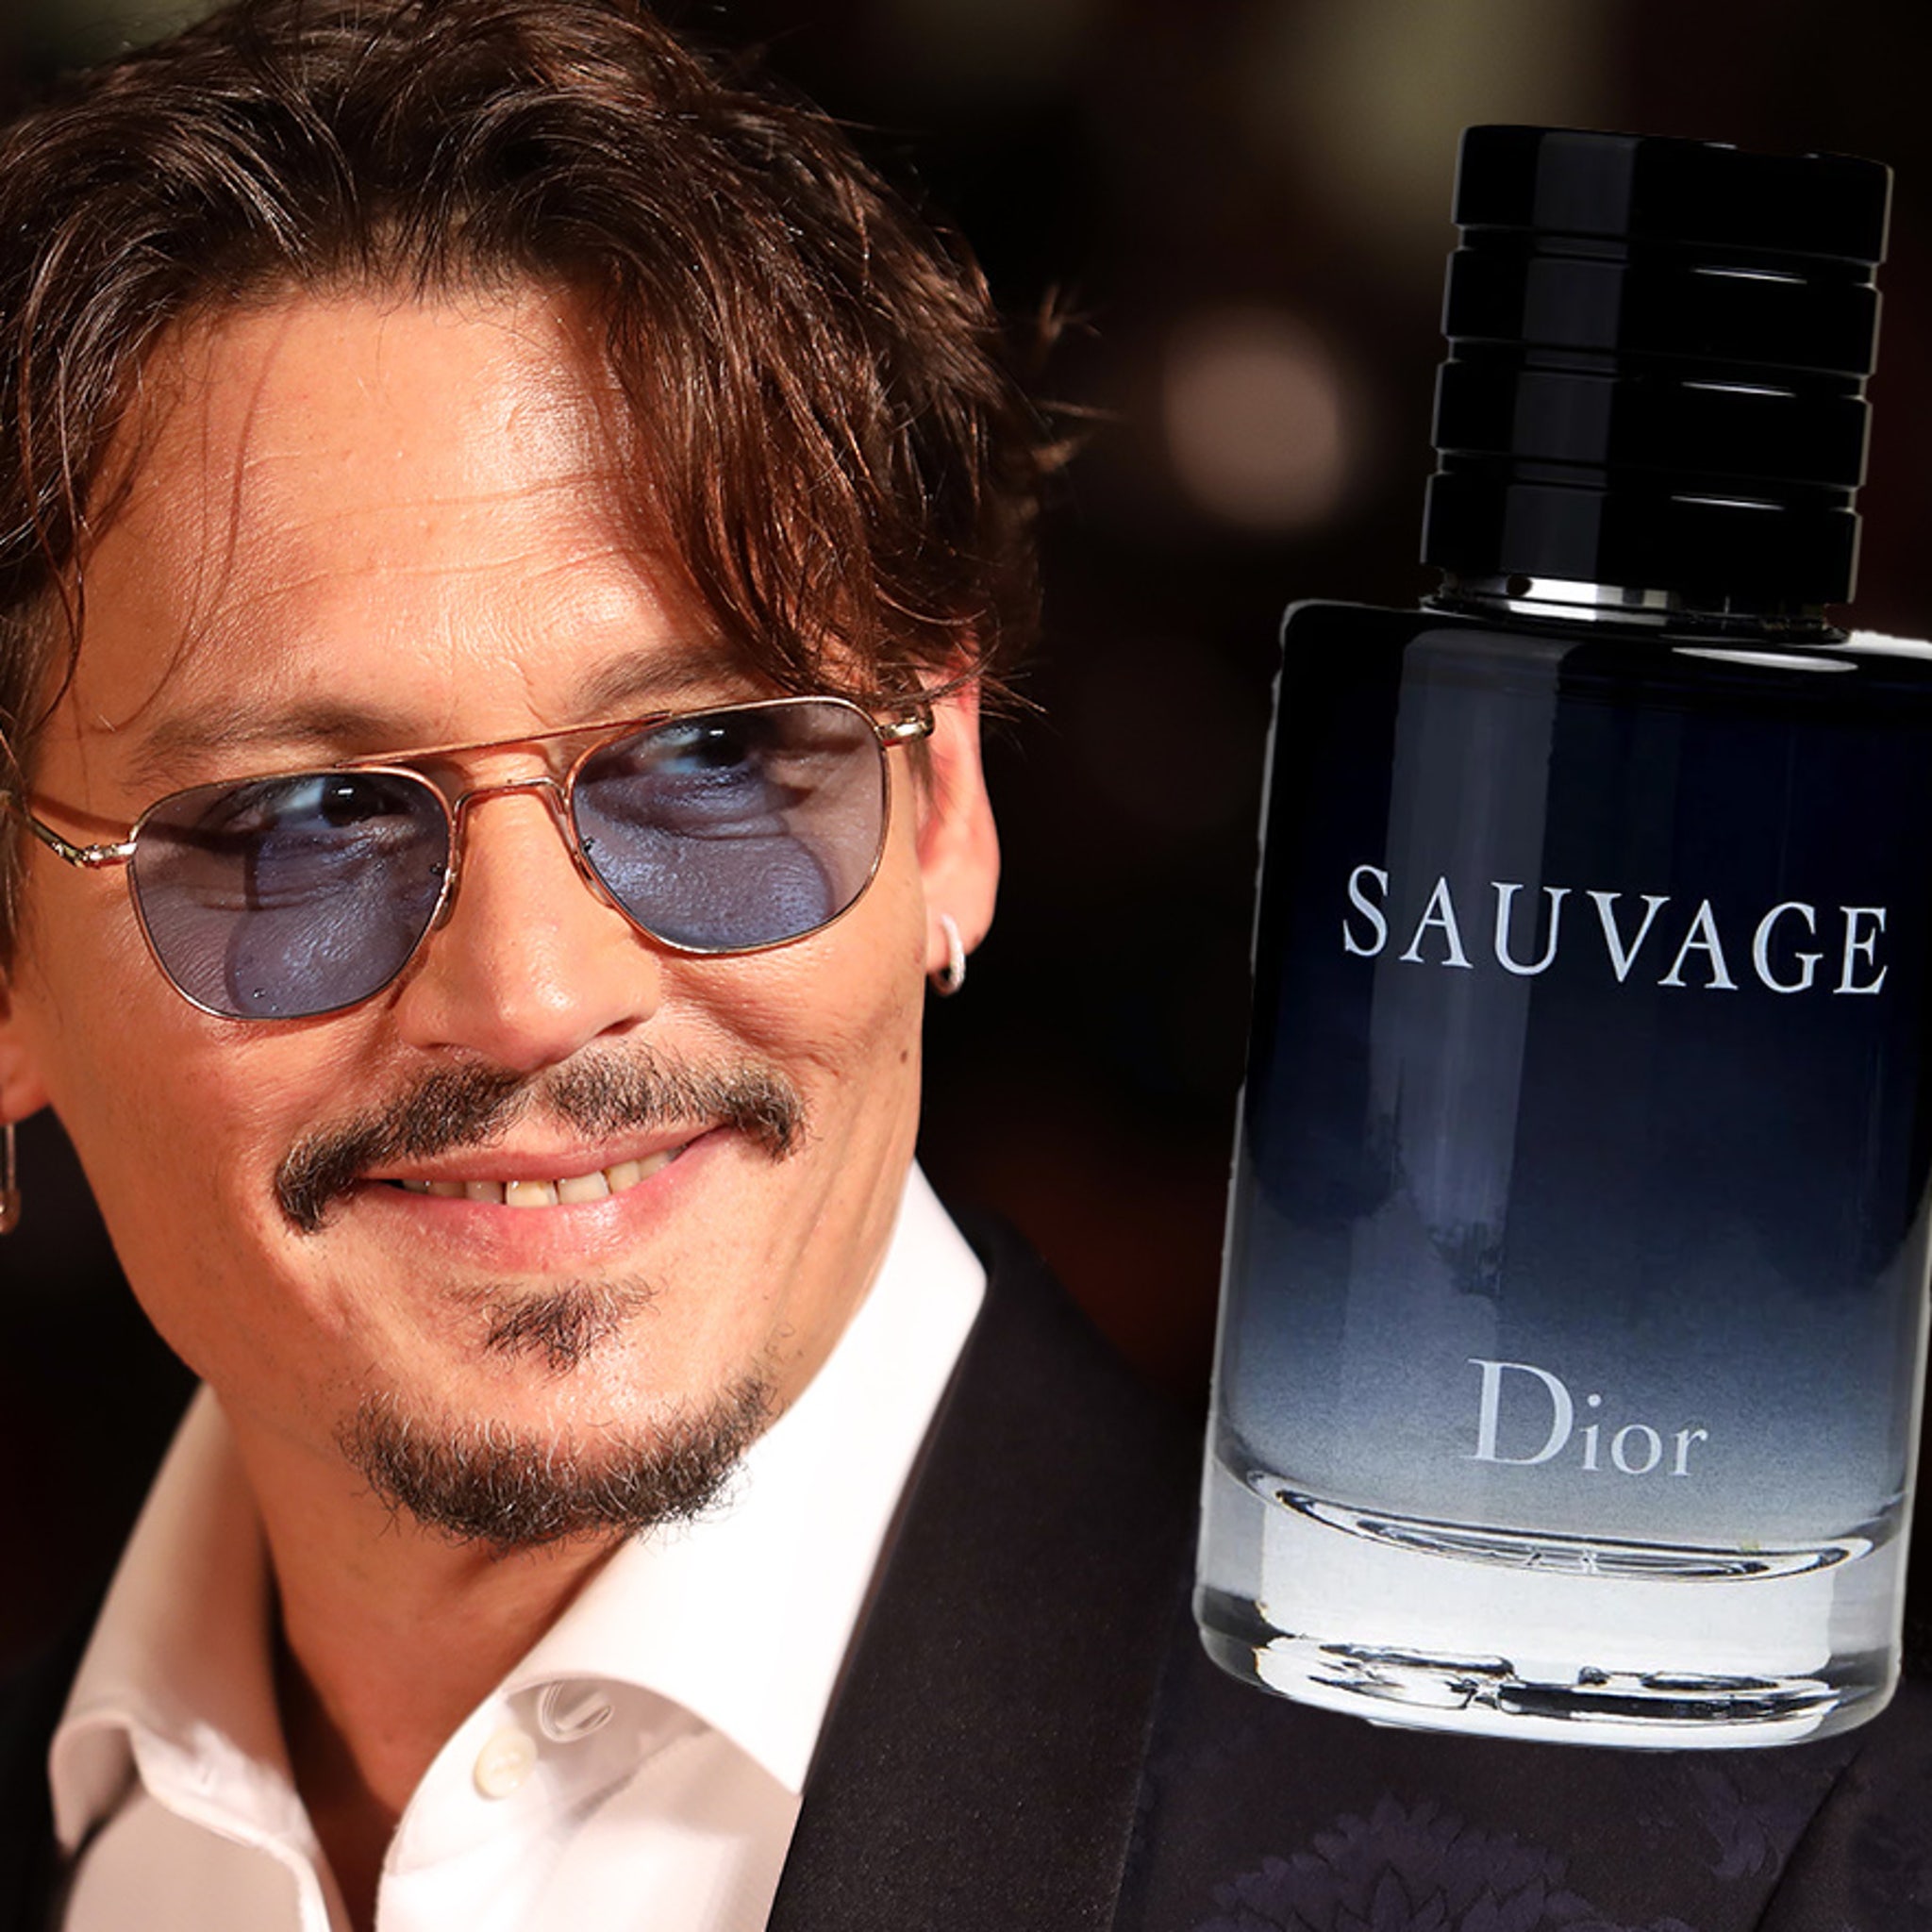 Dior Sauvage Video 2015  Johnny Depp as Man  IMDb